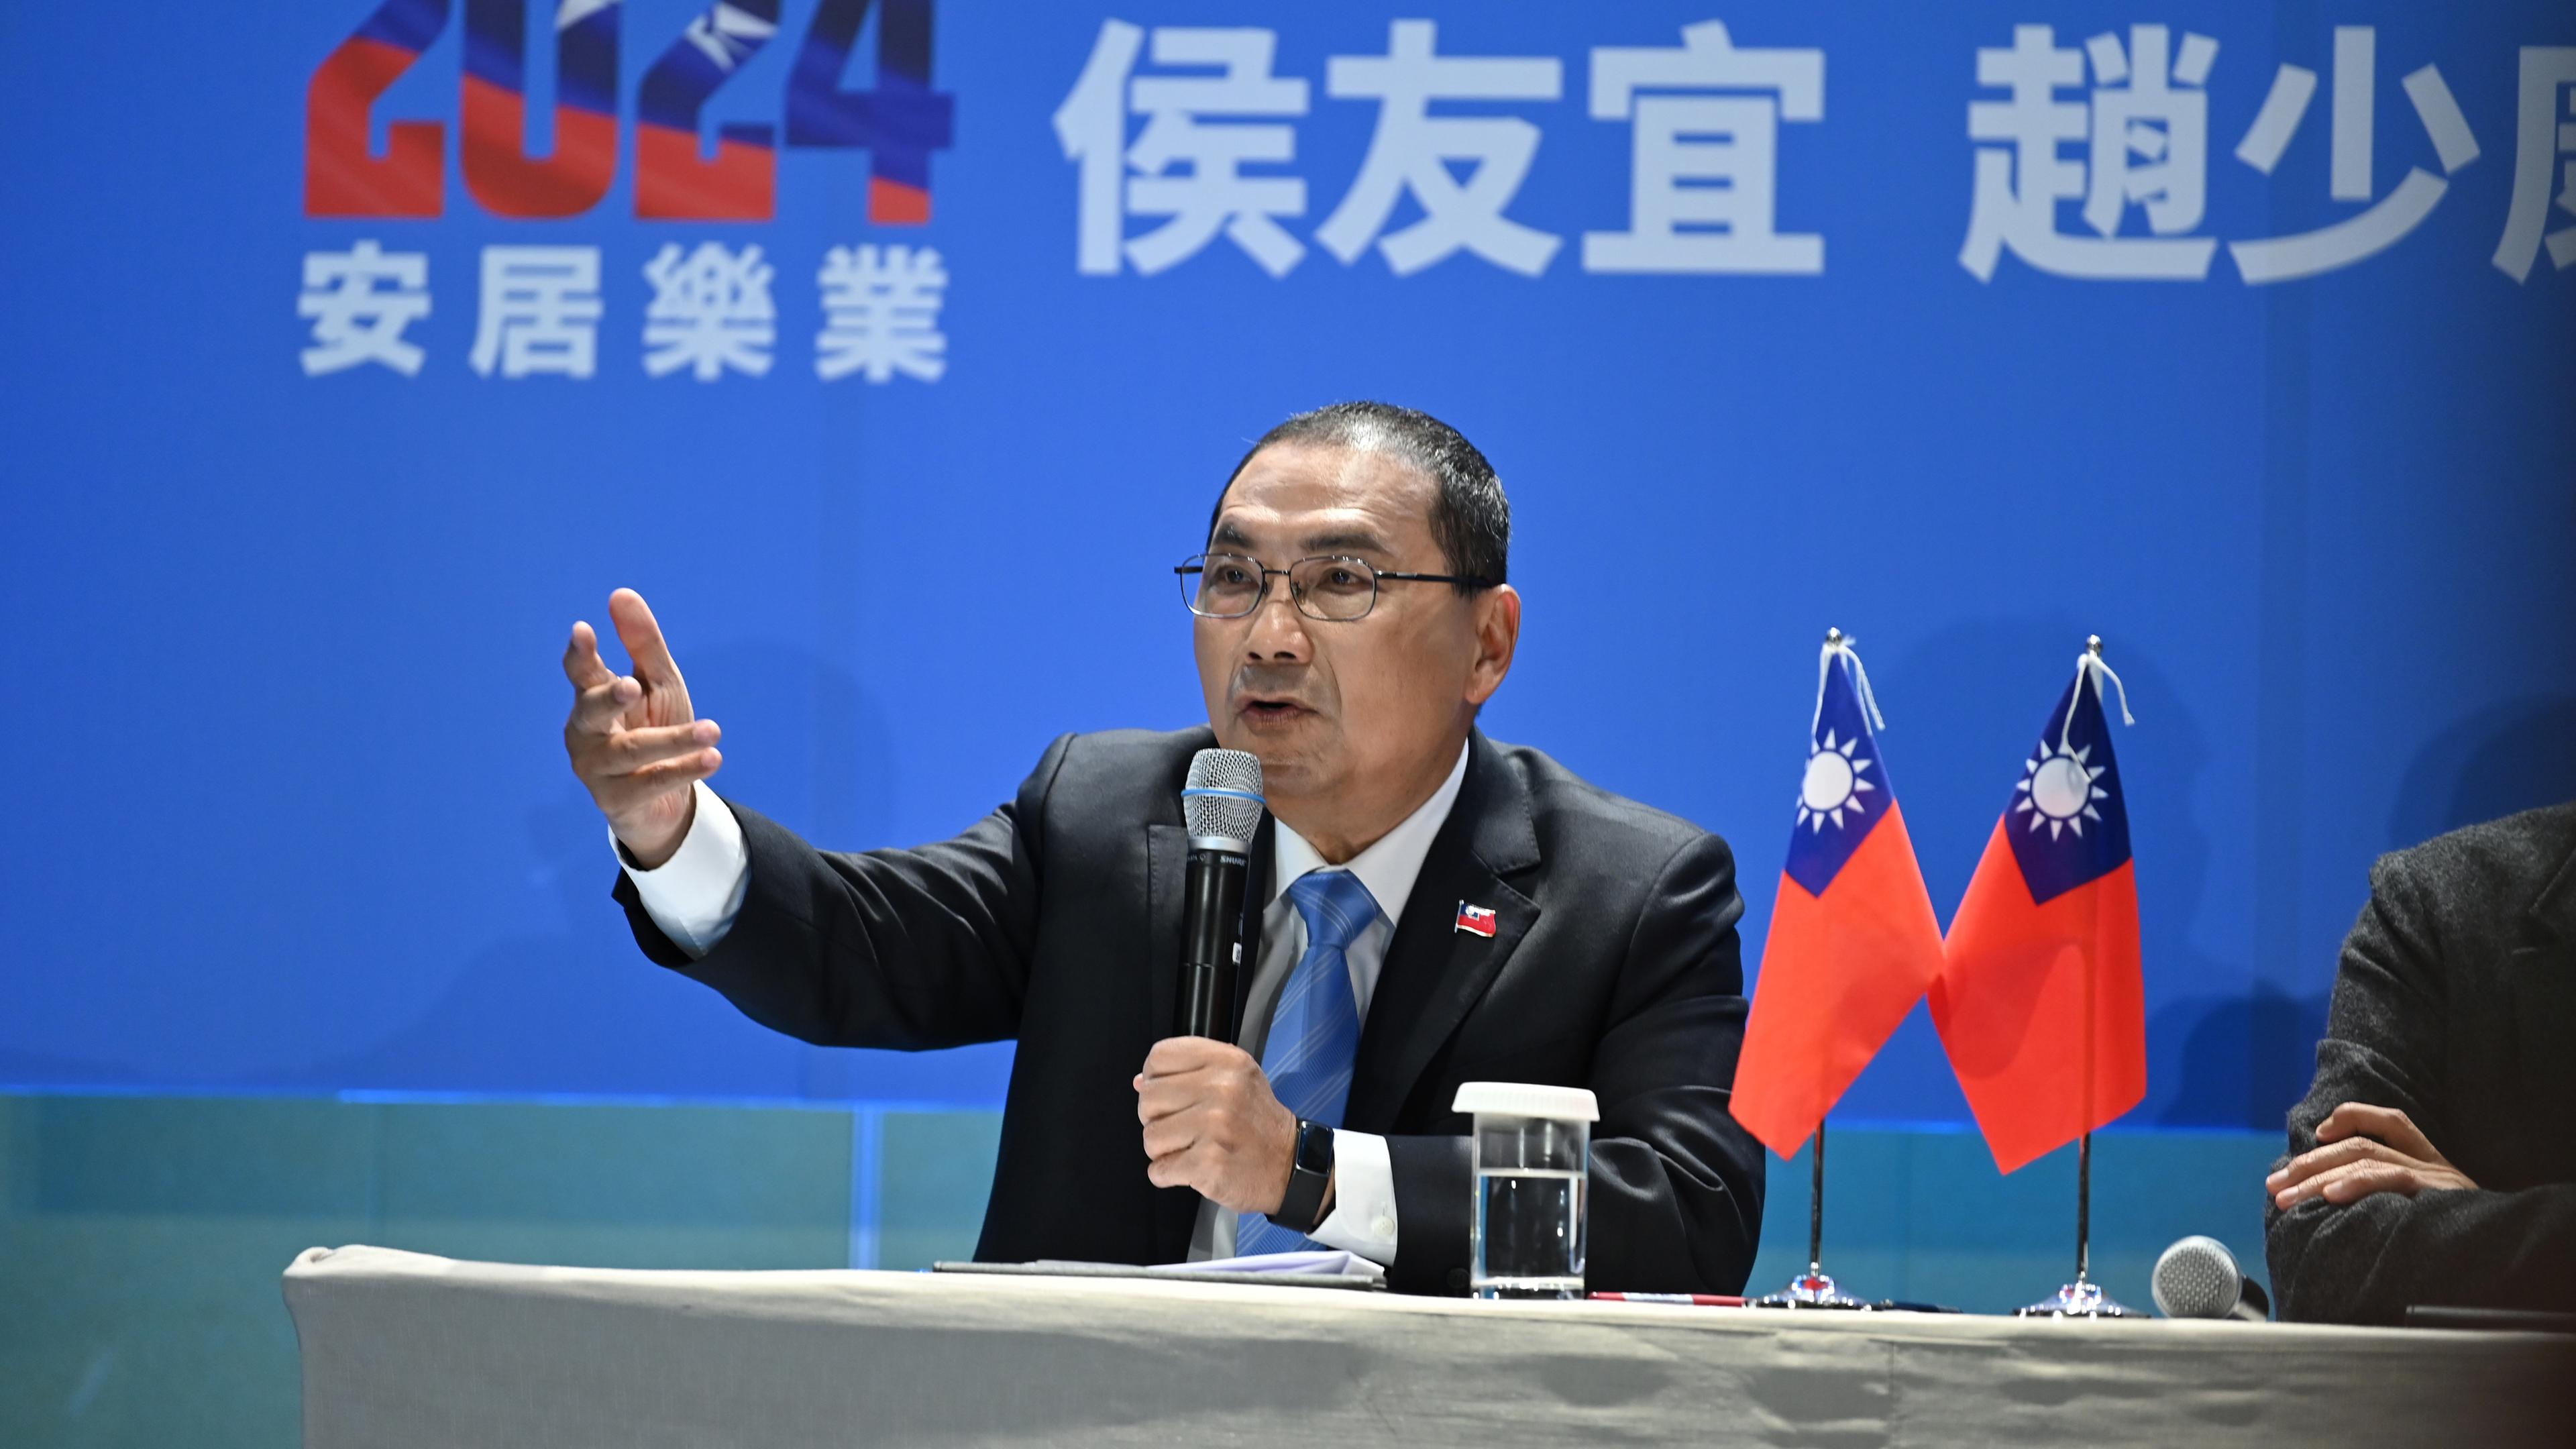  Hou Yu-ih, Präsidentschaftskandidat der taiwanischen Partei Kuomintang, spricht auf einer Pressekonferenz.